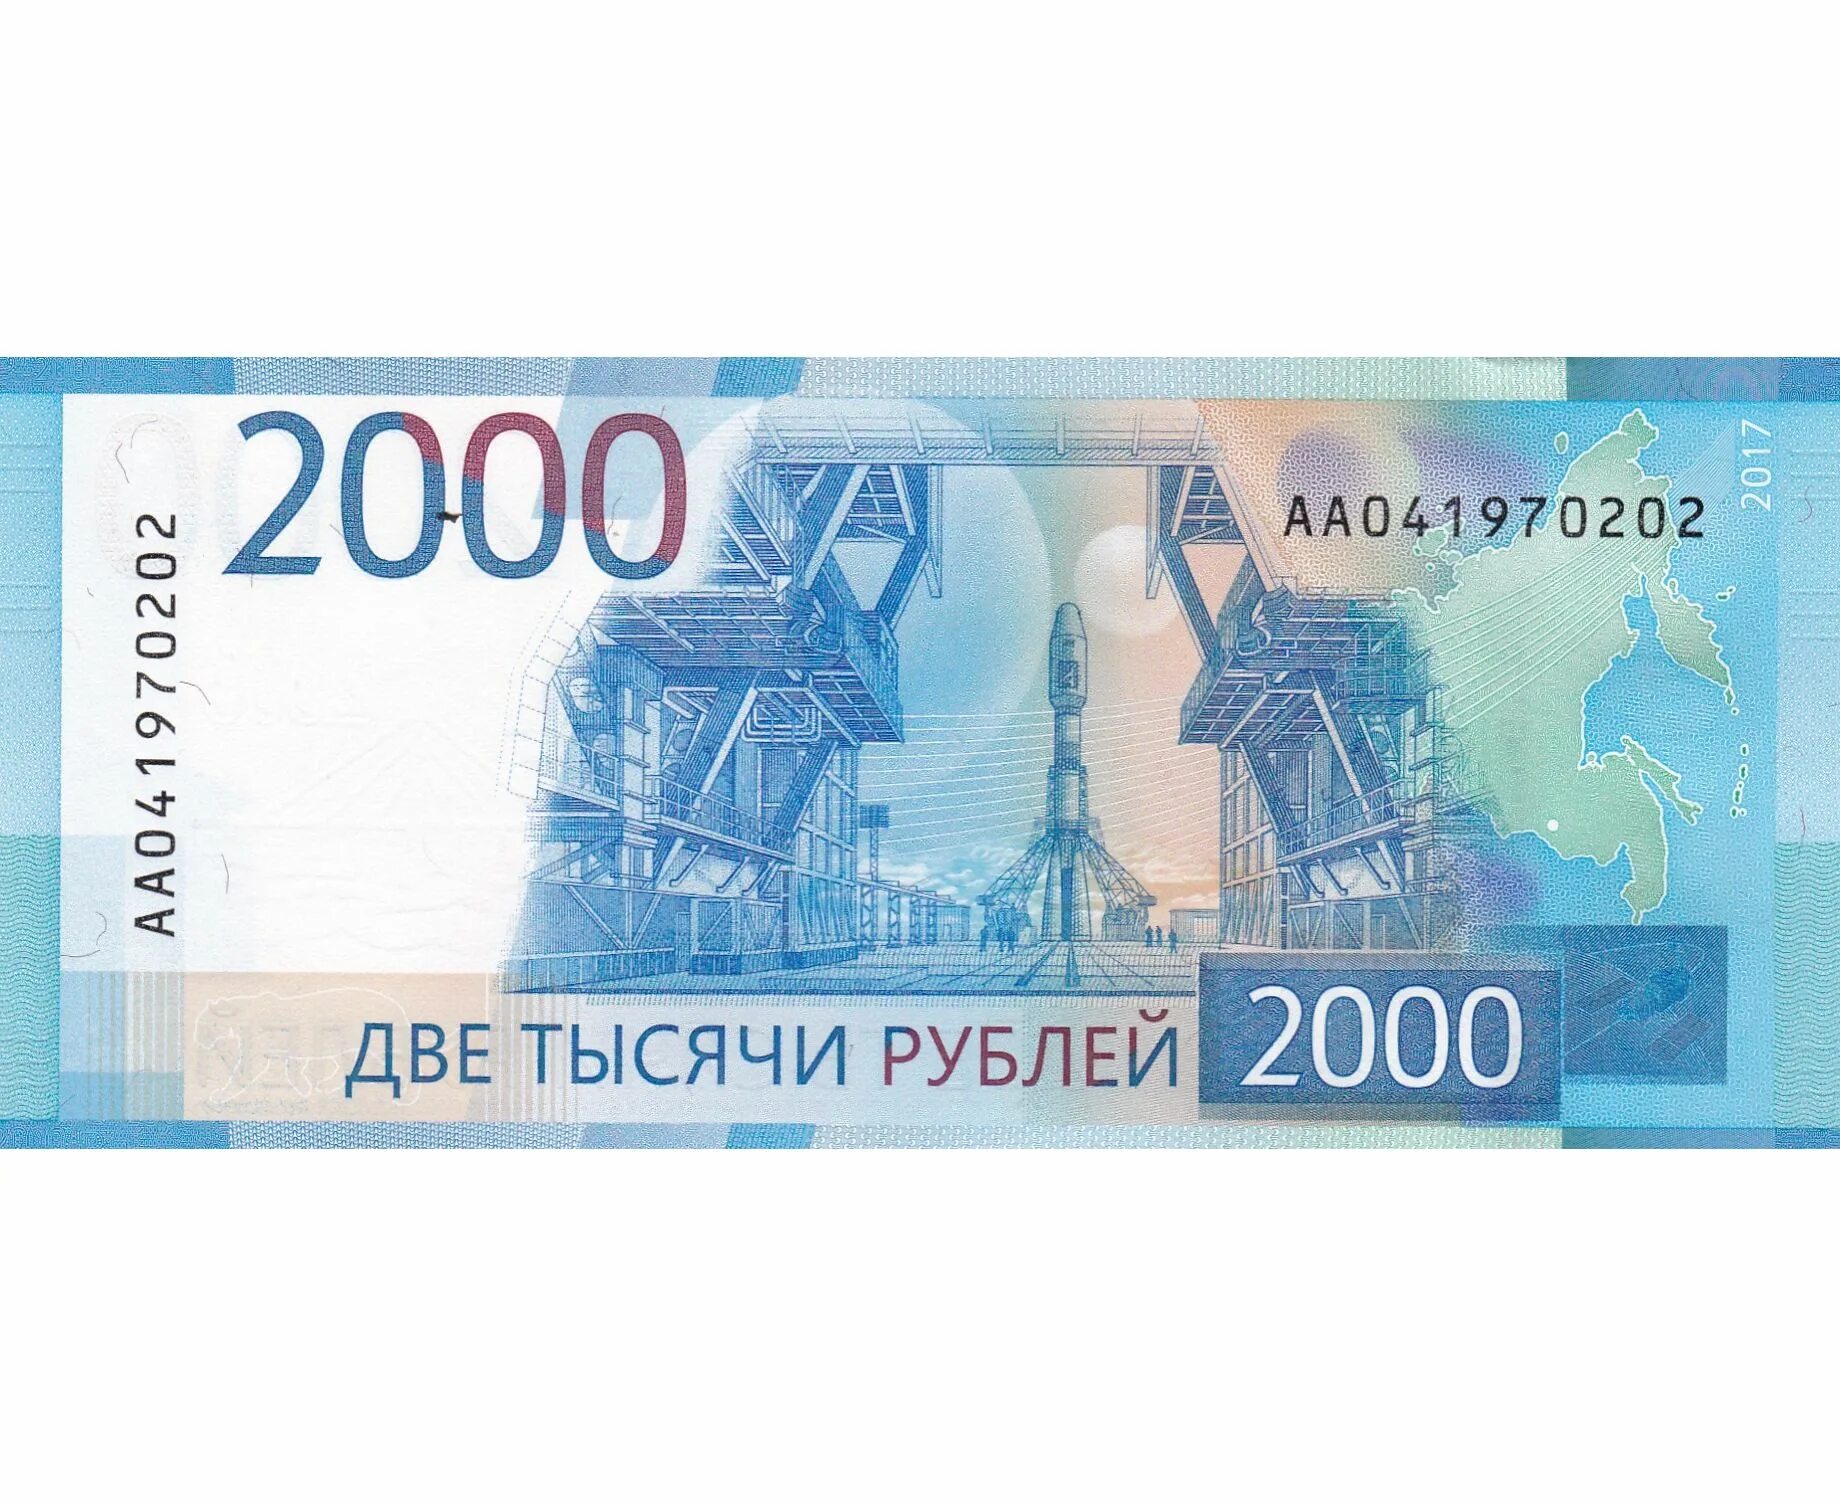 2000 Рублей банкнота. Купюры России 2000. 2 Тысячи рублей. Две тысячи рублей купюра.